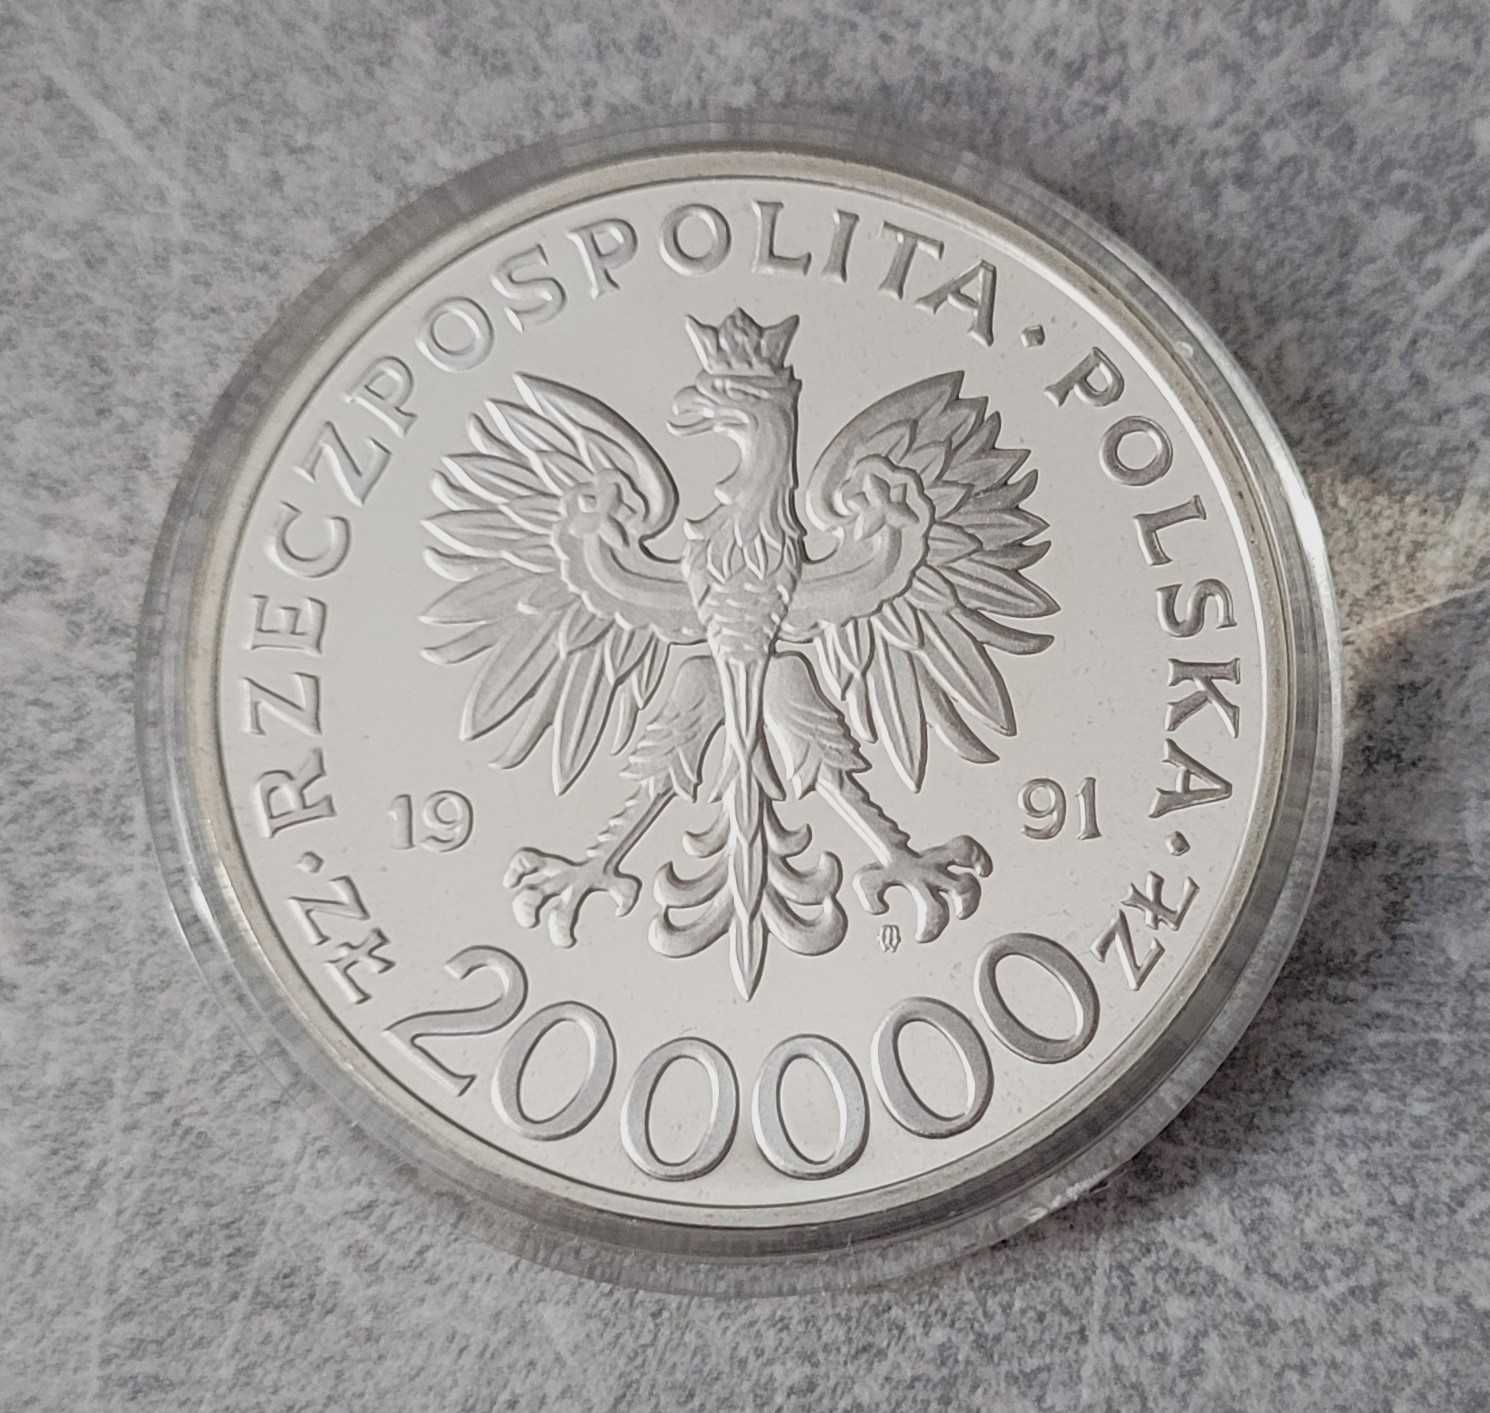 H19) POLSKA III RP srebro - 200 000 Złotych - 1991 r.